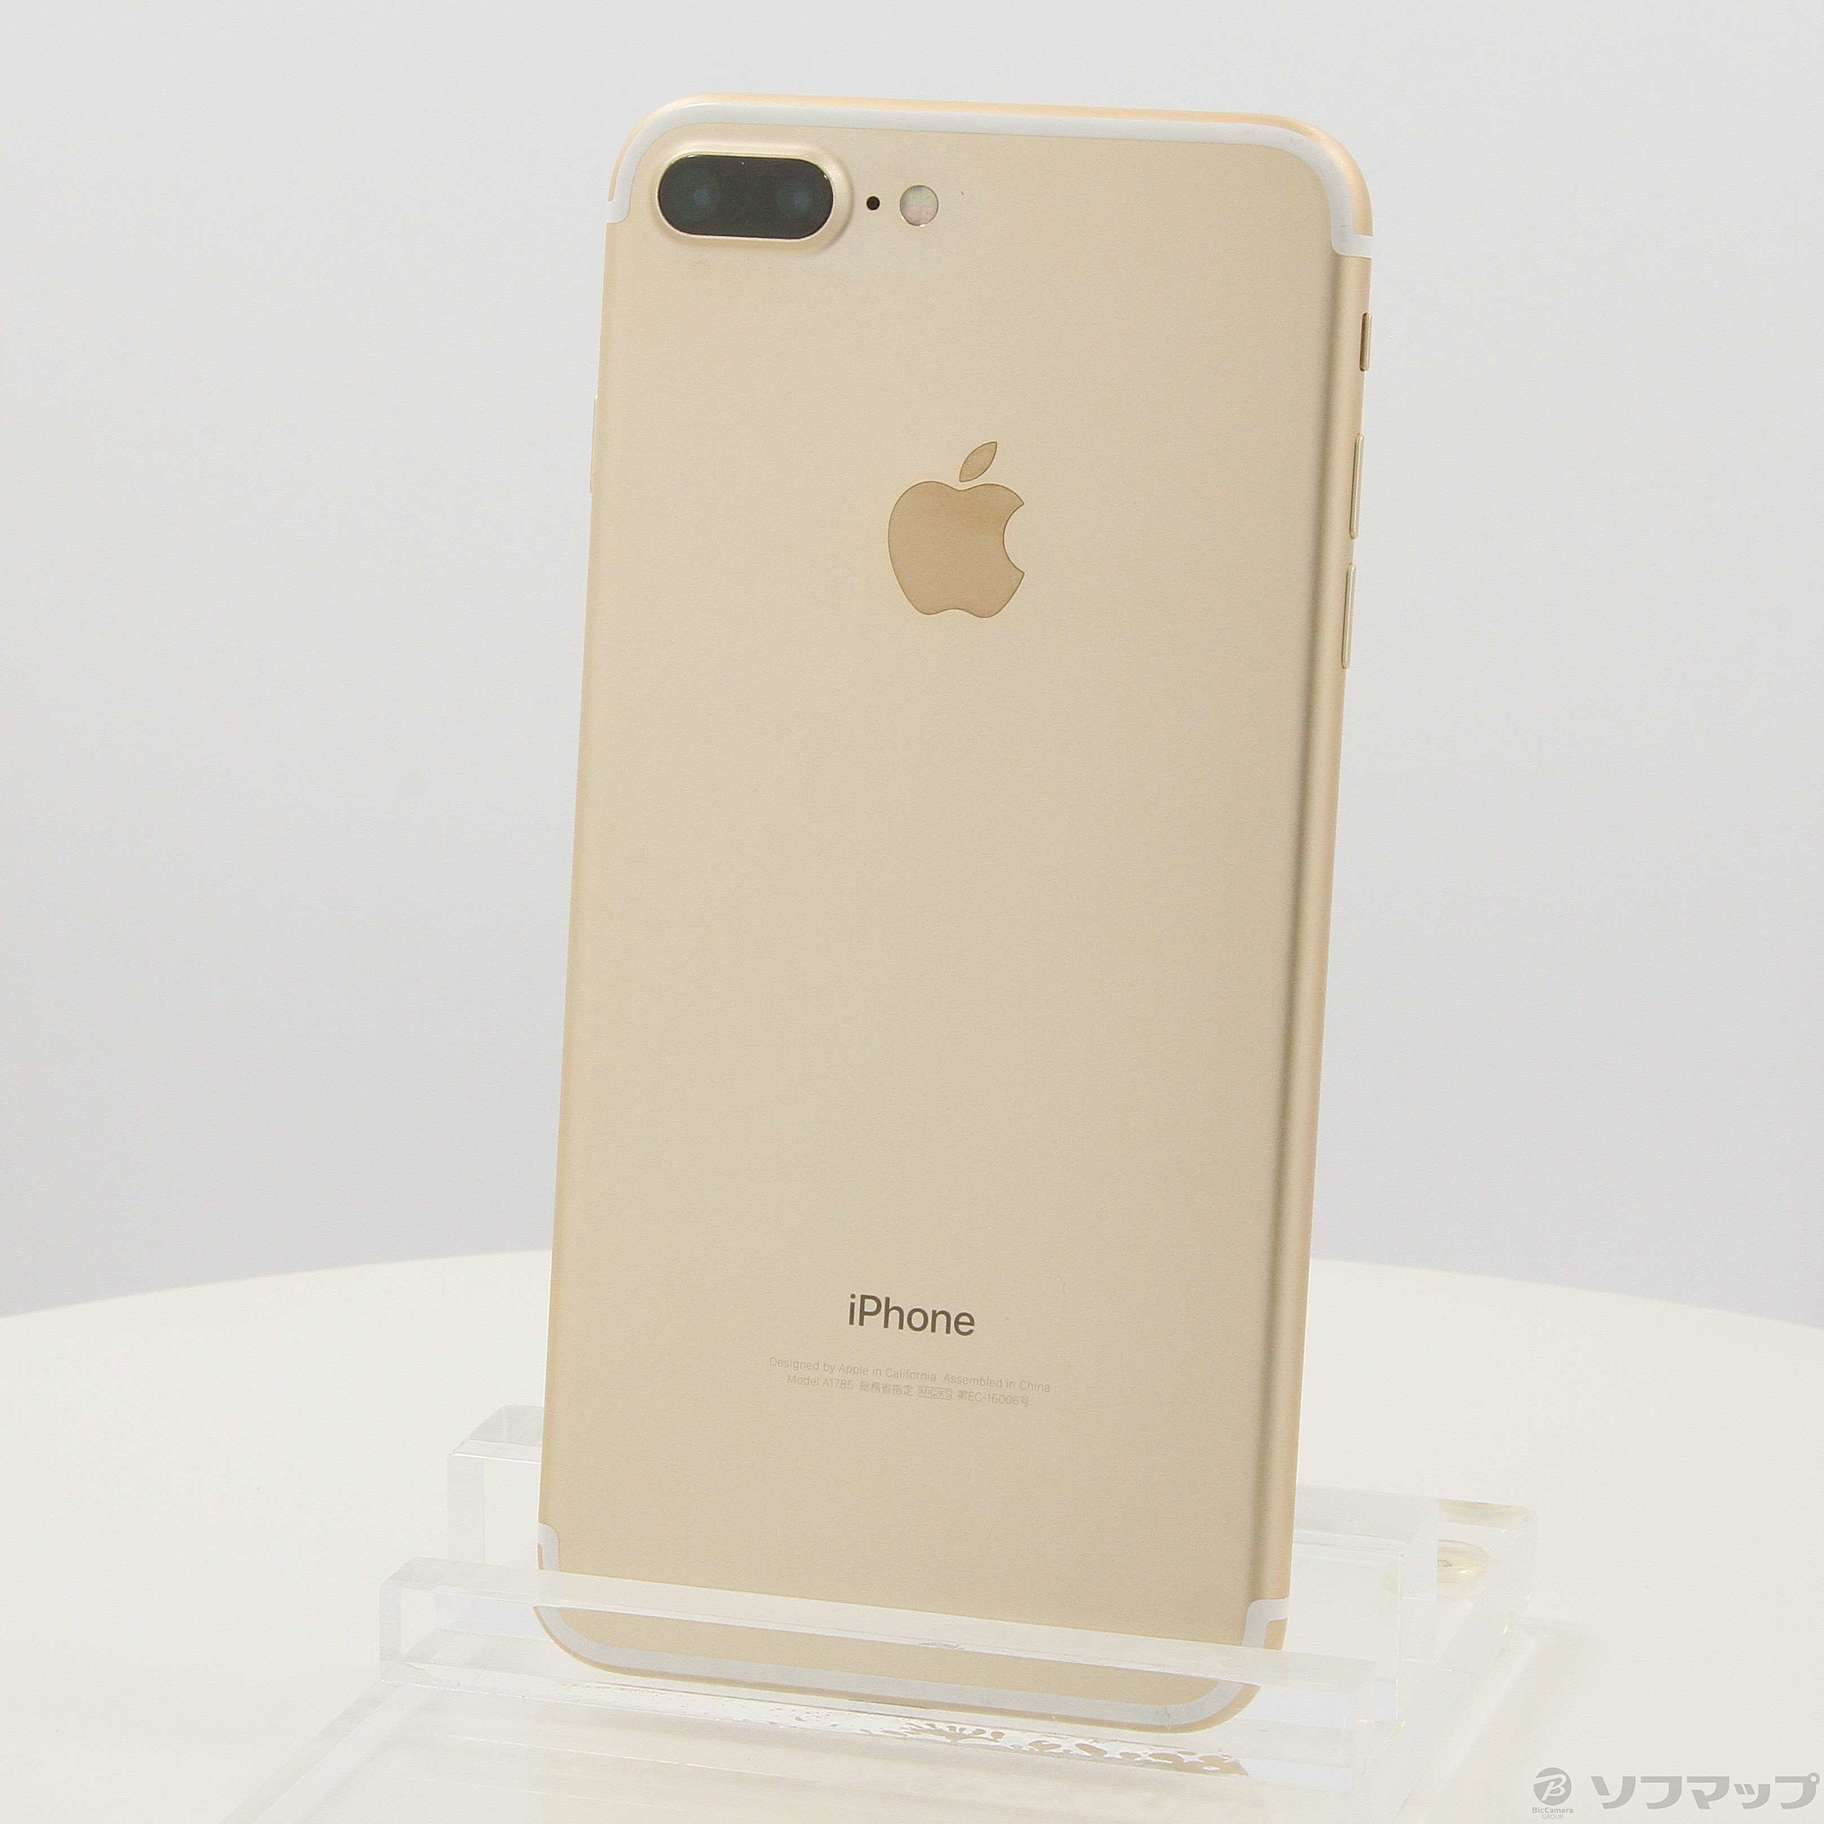 【大幅値下げセール品】iPhone7plus 128GB ゴールド SIMフリー